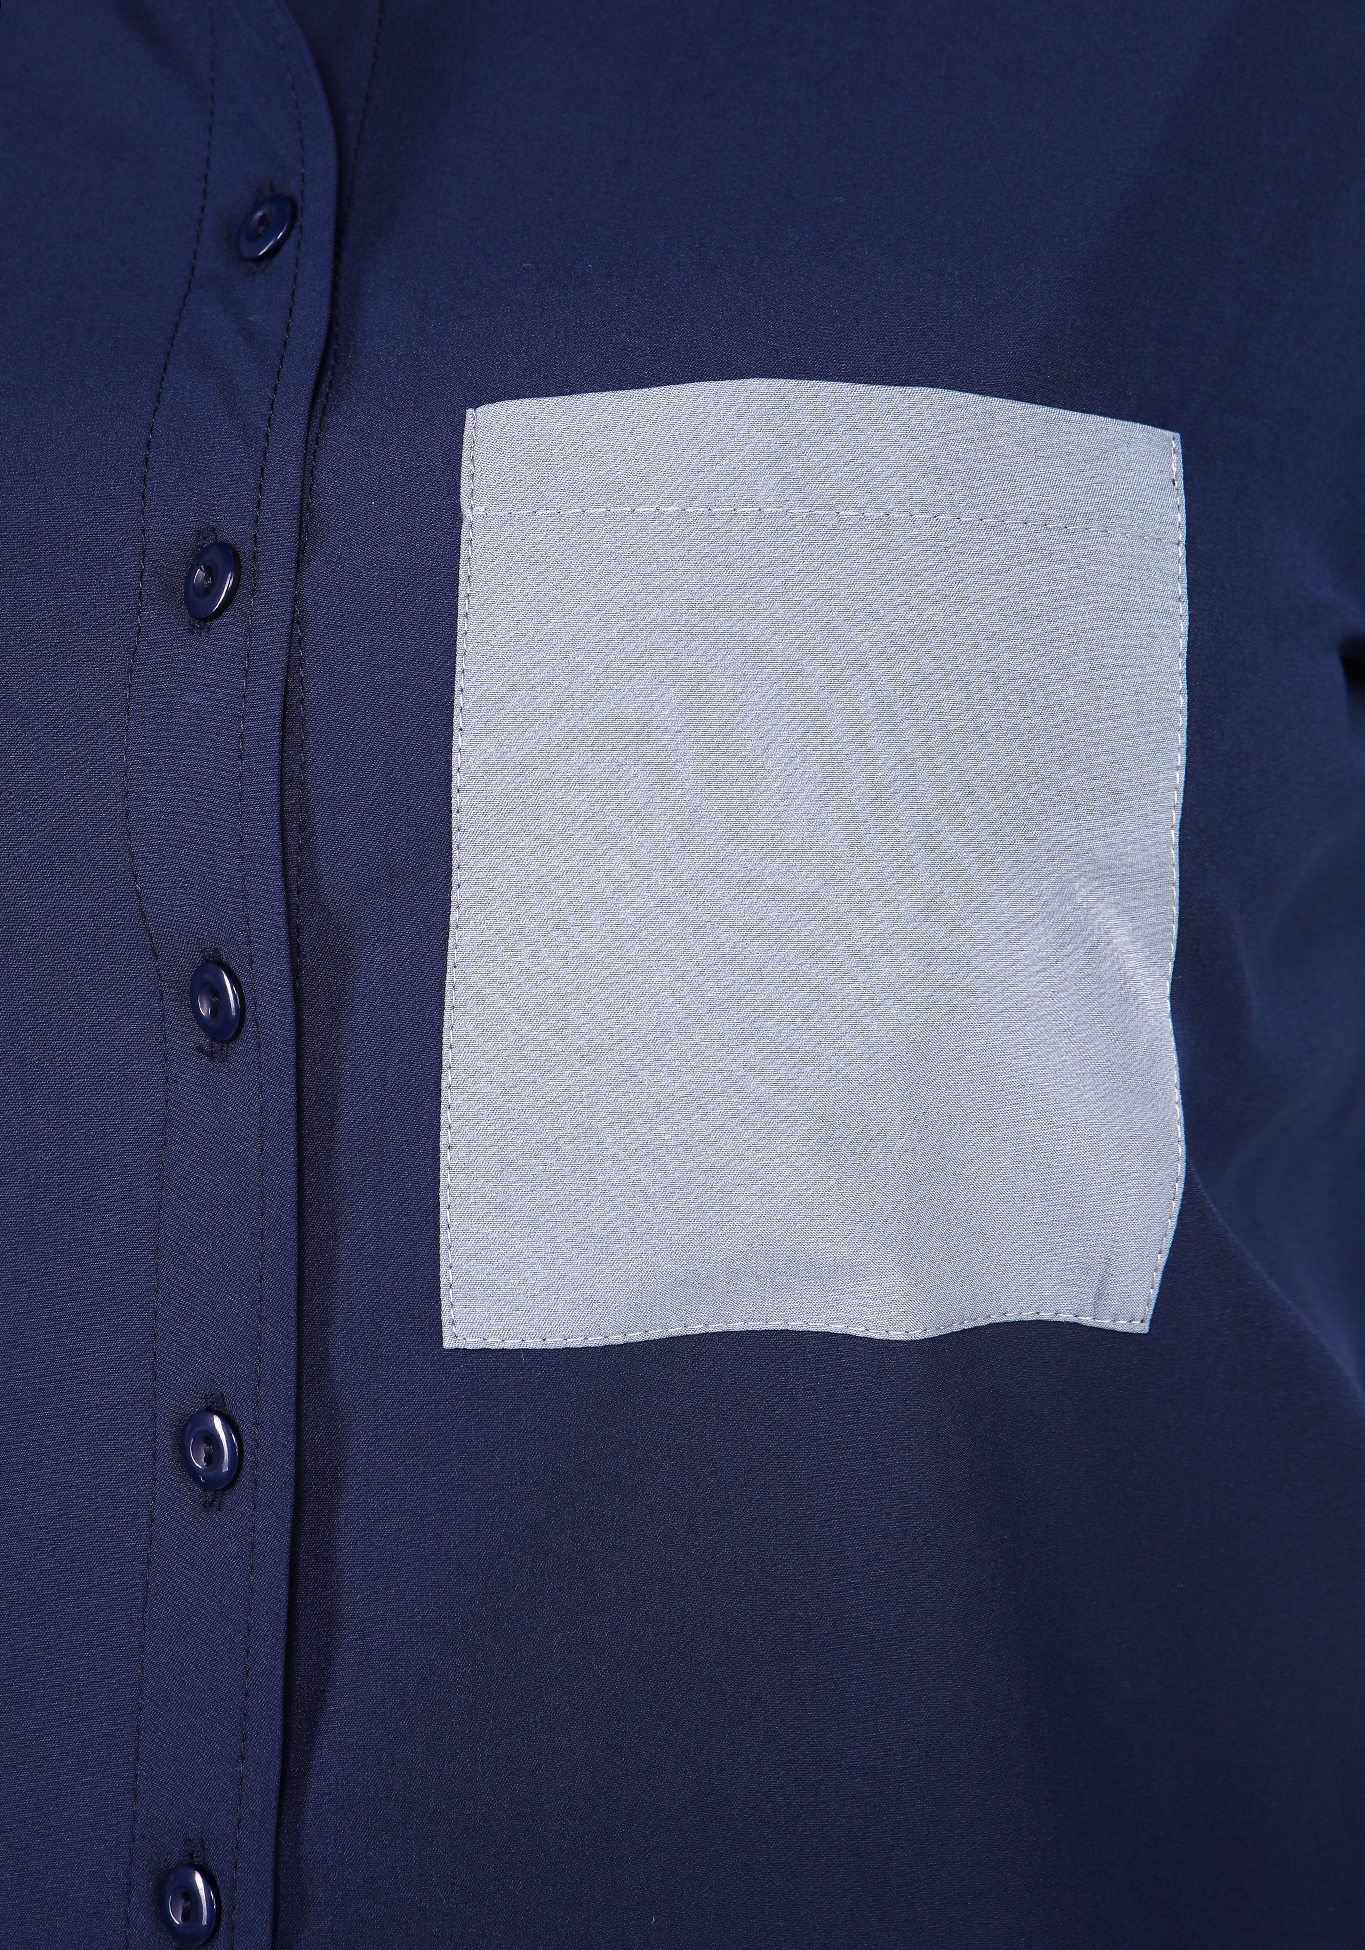 Рубашка из комбинированной ткани Elletto Life, размер 48, цвет синий - фото 4